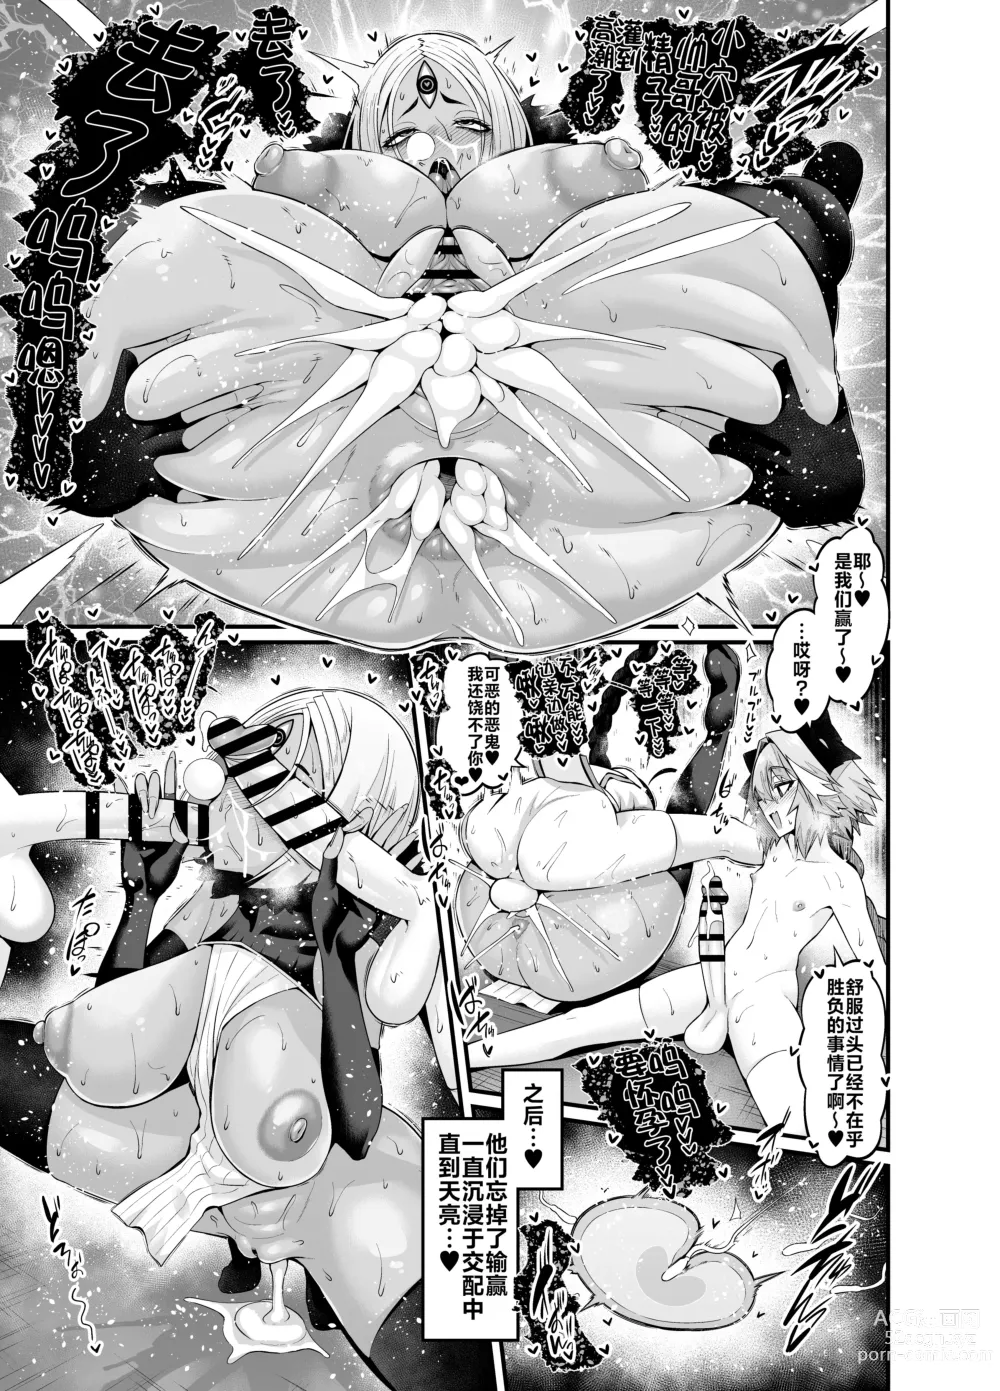 Page 5 of doujinshi Ushi Gozen vs yamatake & asutorufo